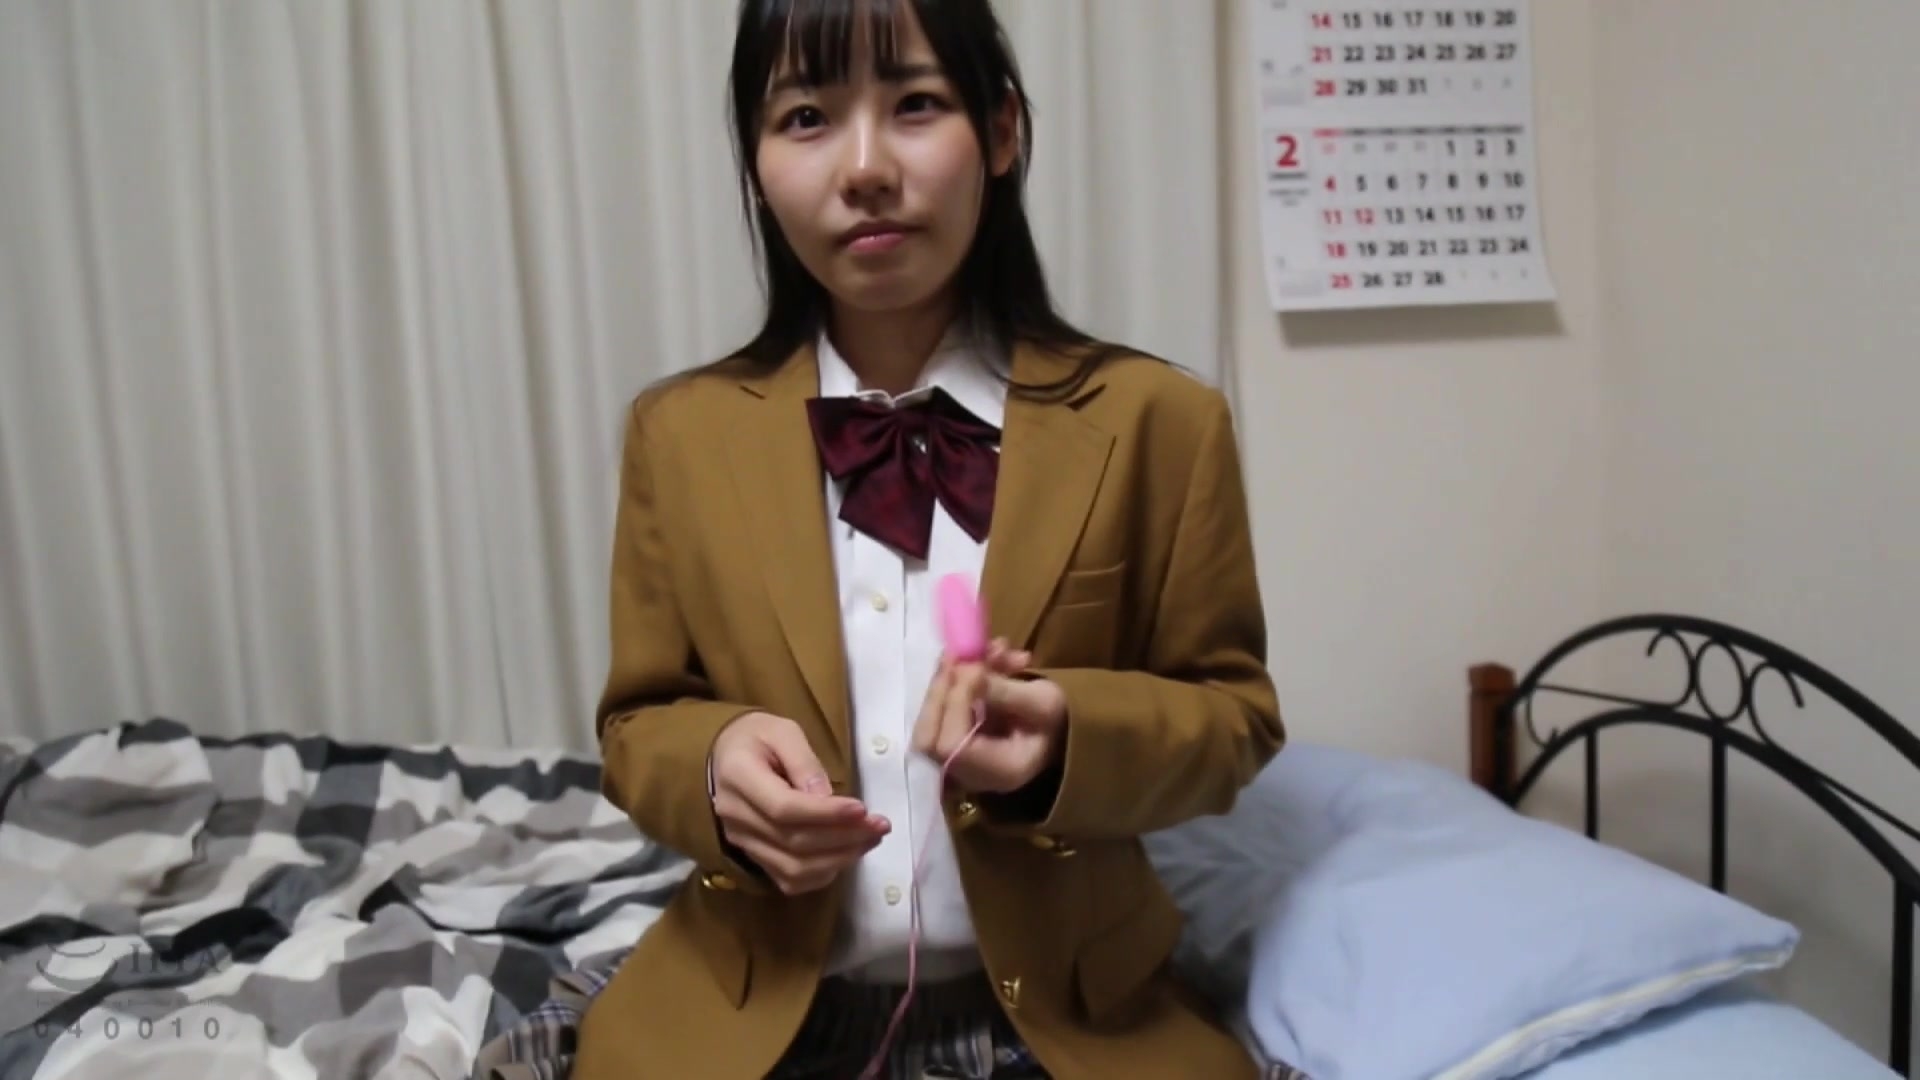 IBW-700 上京した兄の部屋に通う妹の中出し近親隠し撮り映像